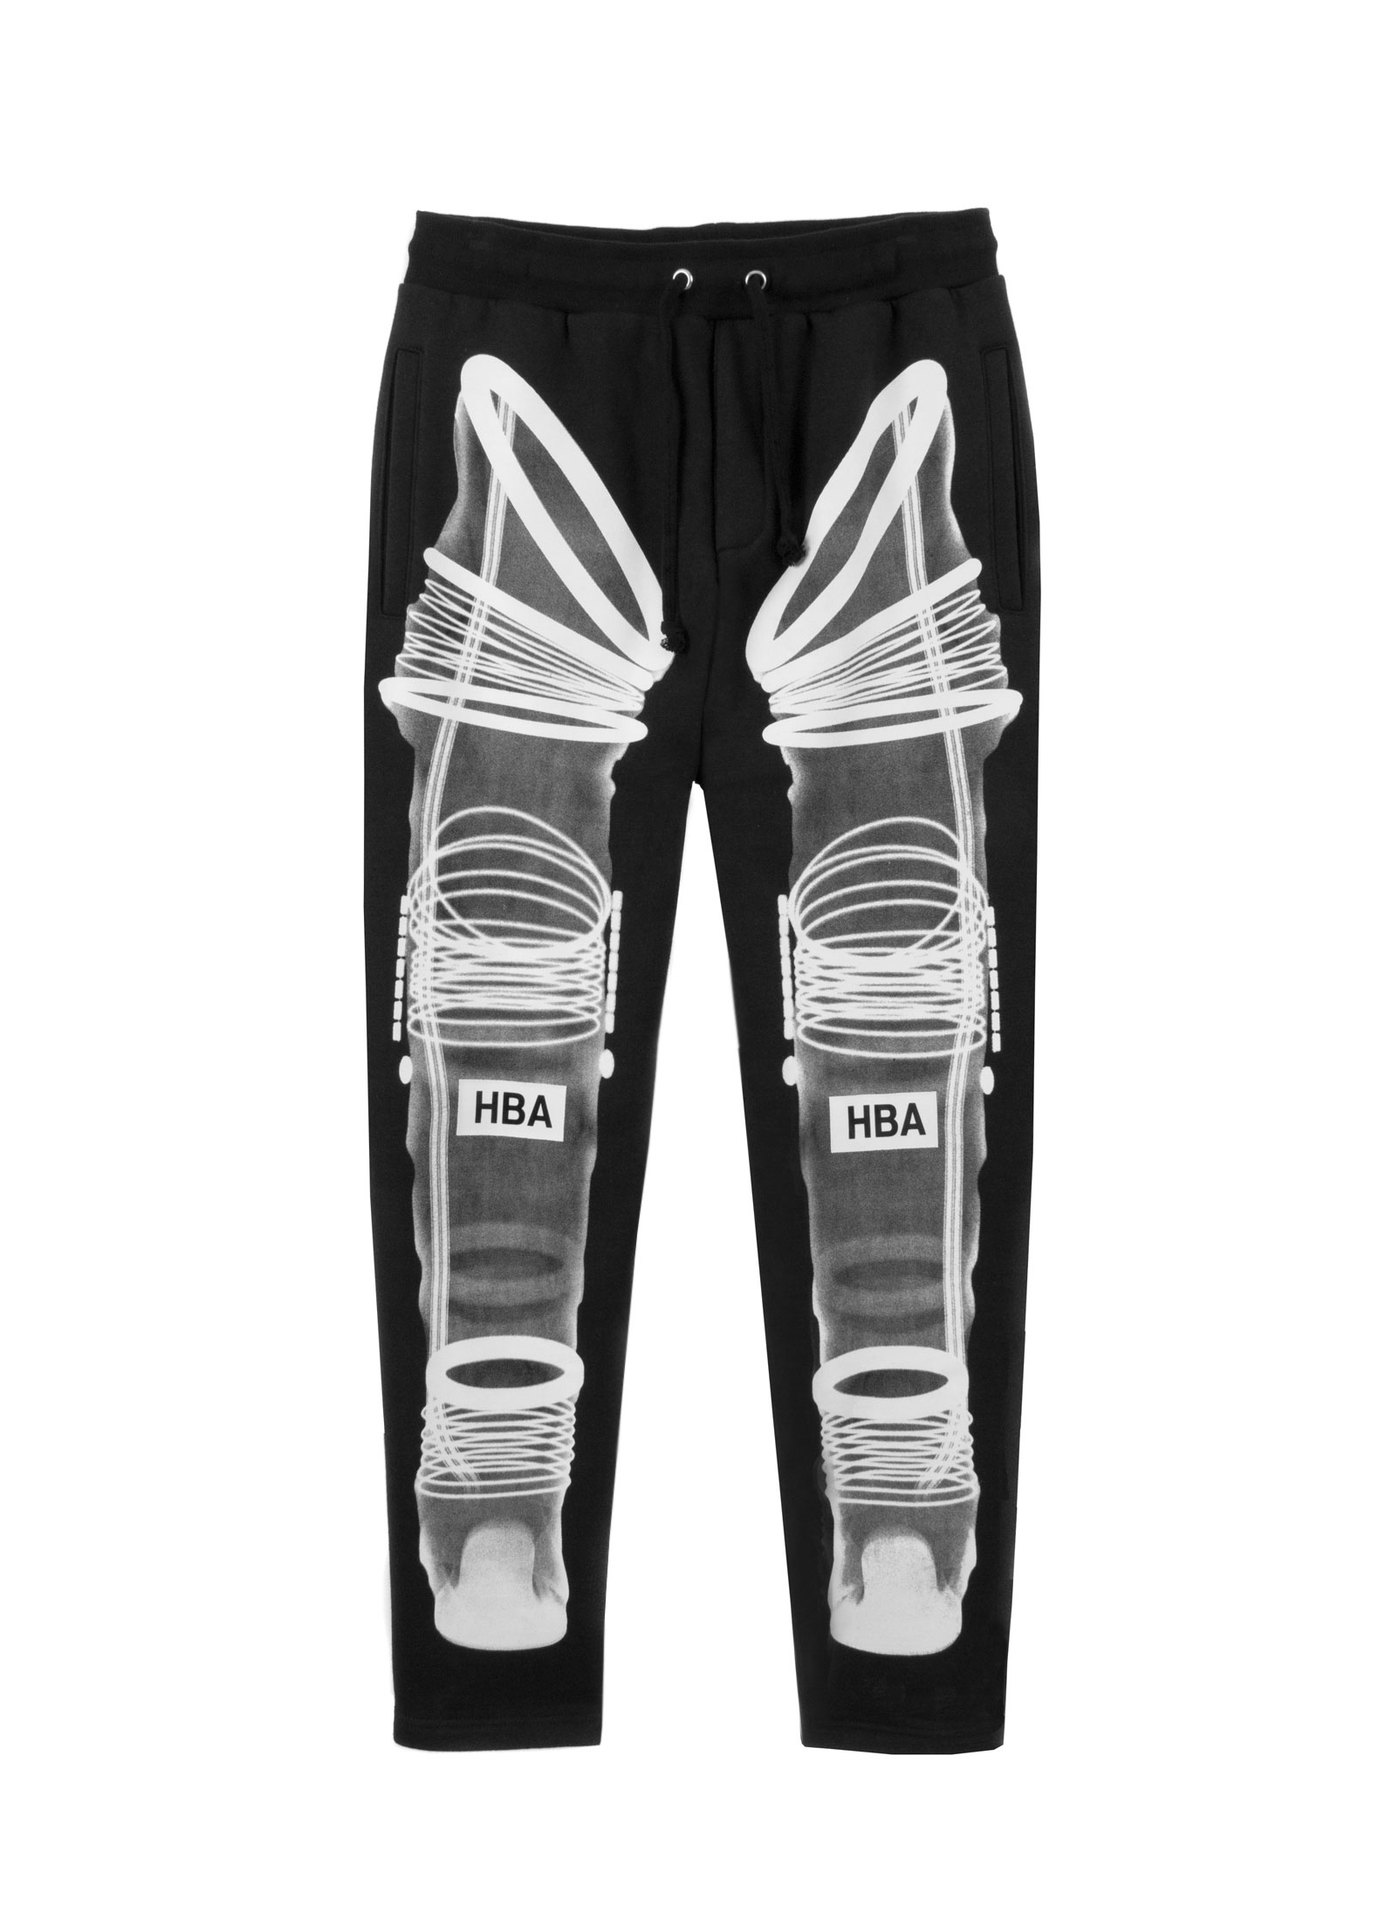 2015HBA裤子欧美风格太空服图案裤子权志龙同款休闲运动长裤包邮